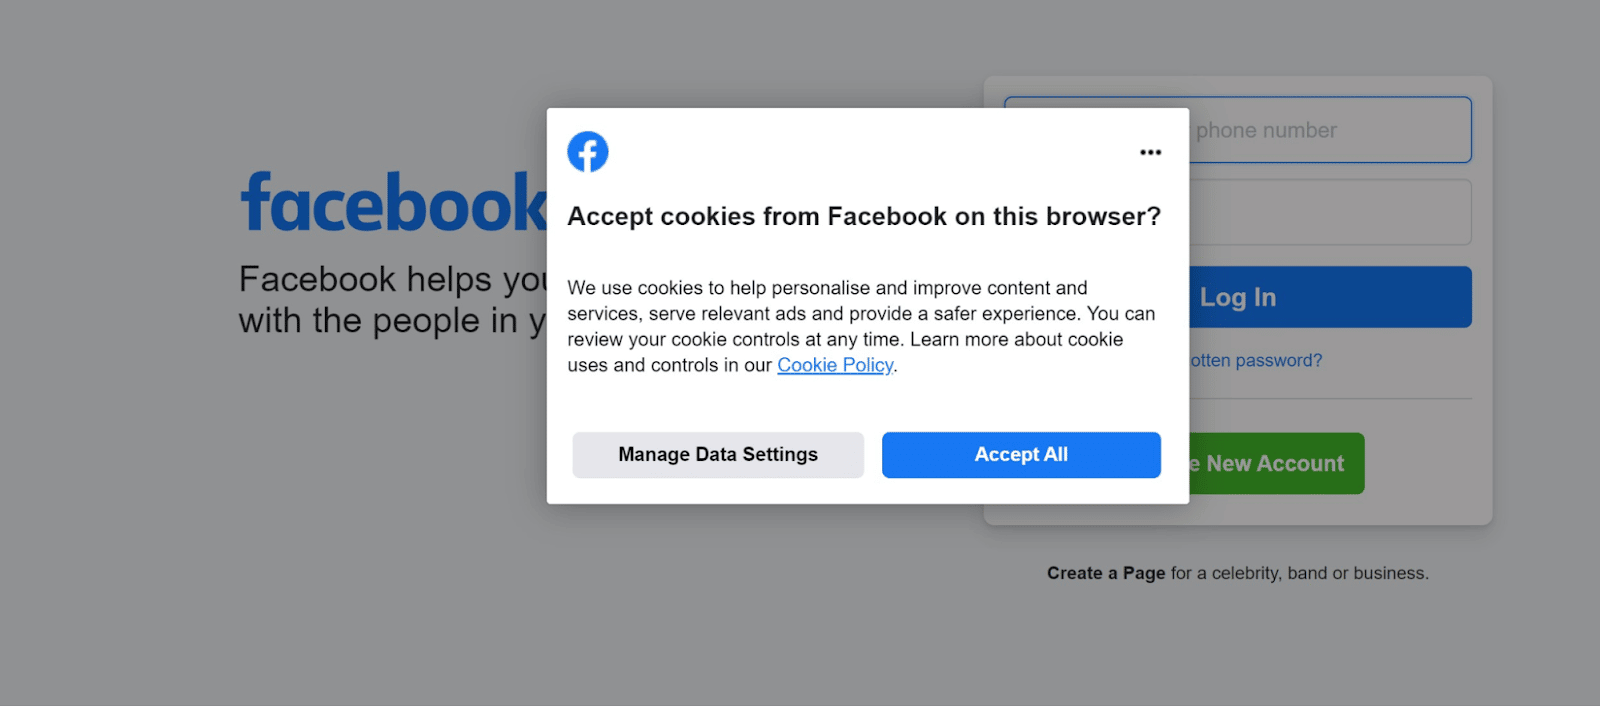 Una solicitud de consentimiento del consumidor de Facebook